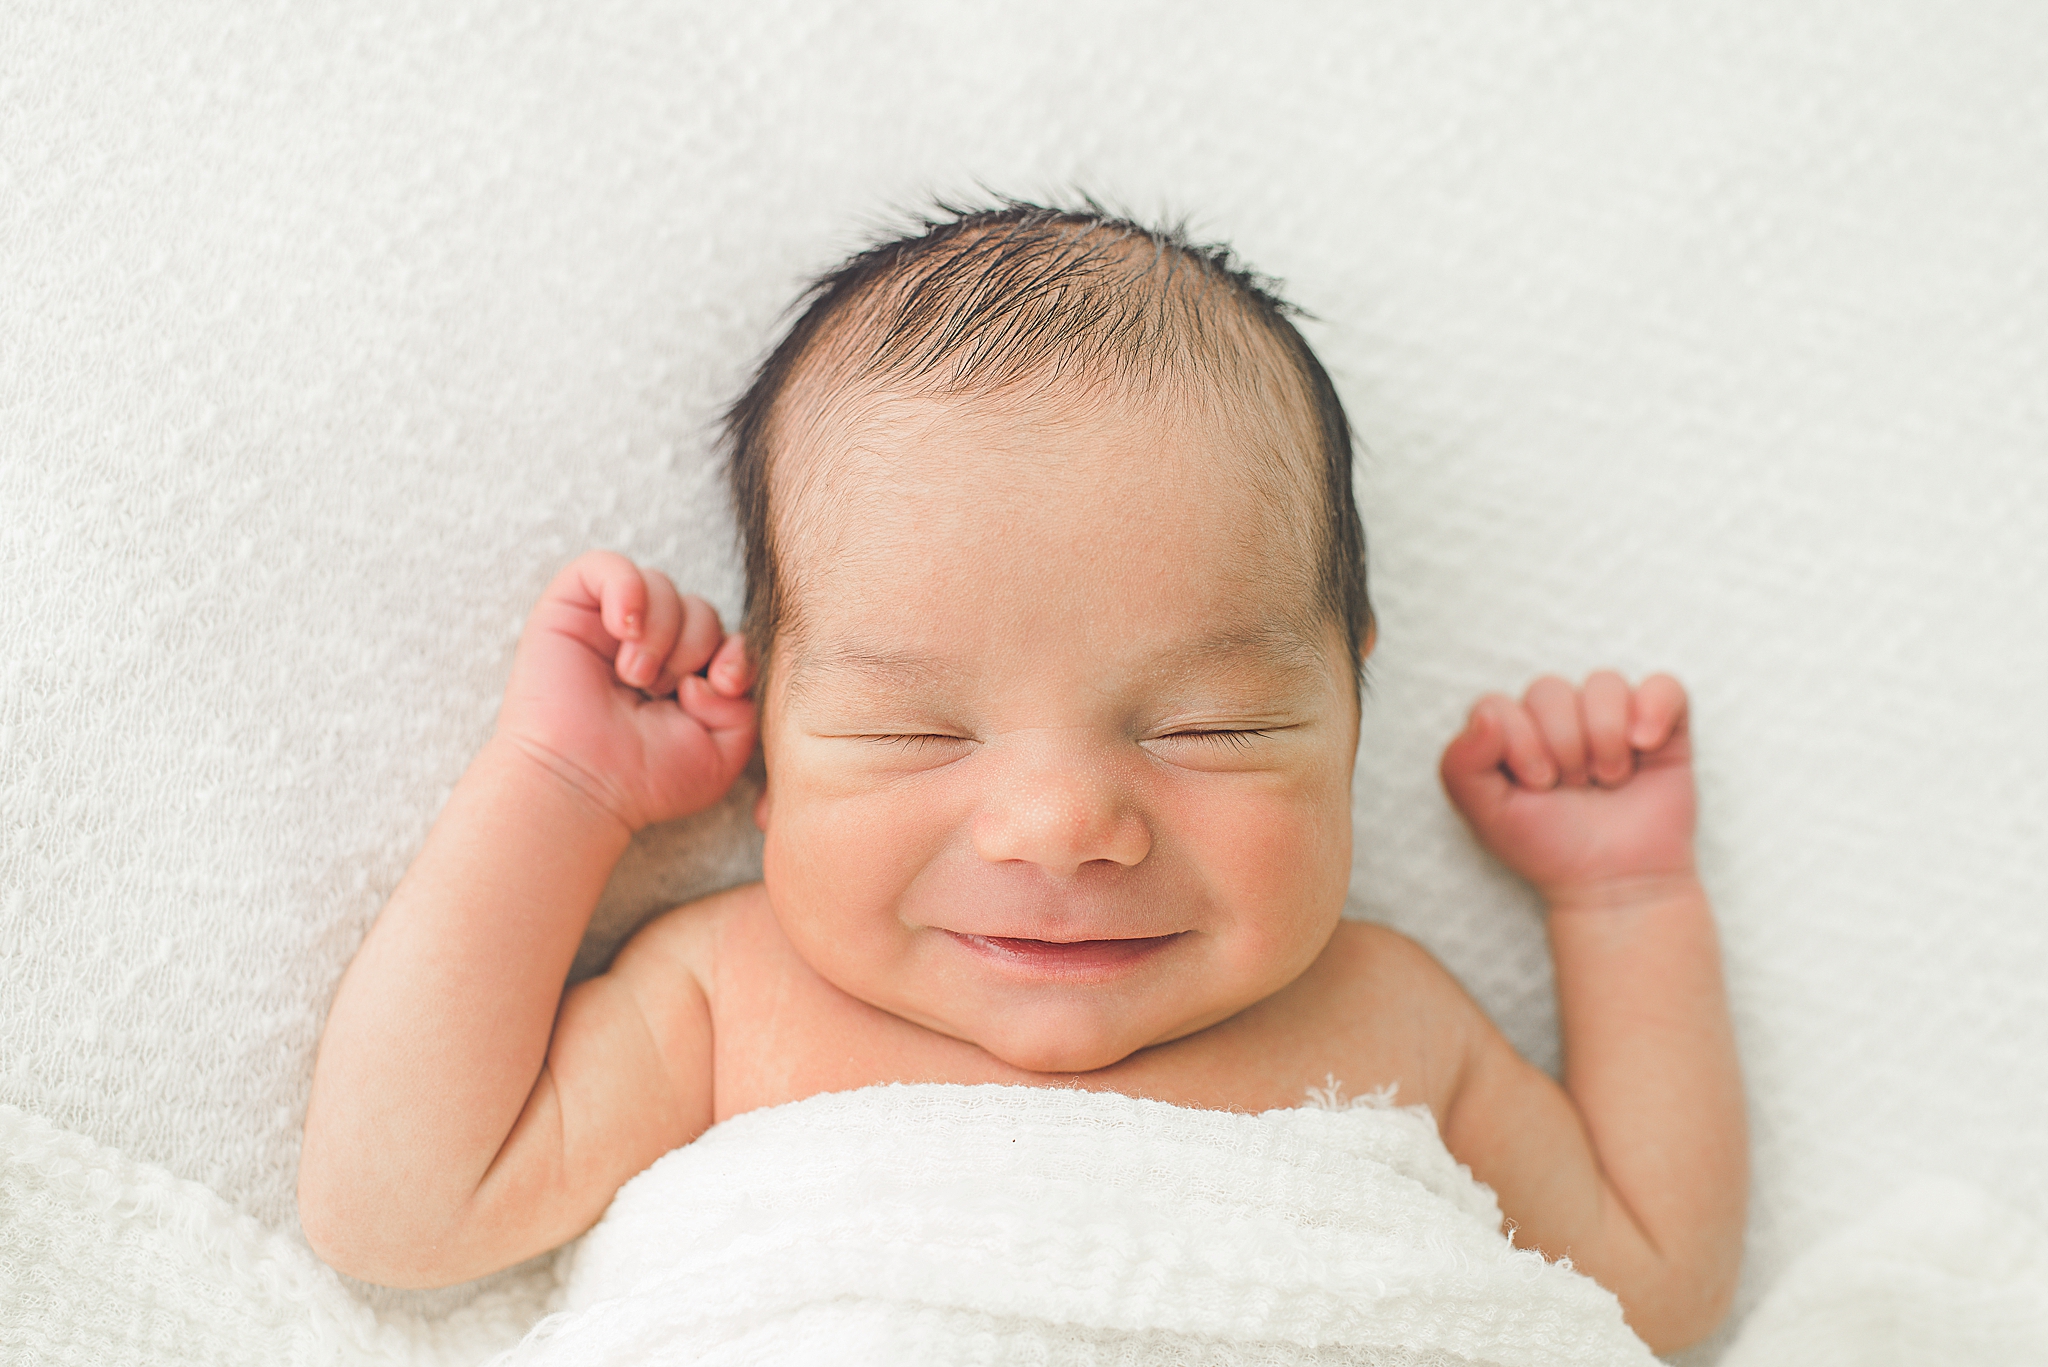 Centerville Newborn Photographer | Baby Robert